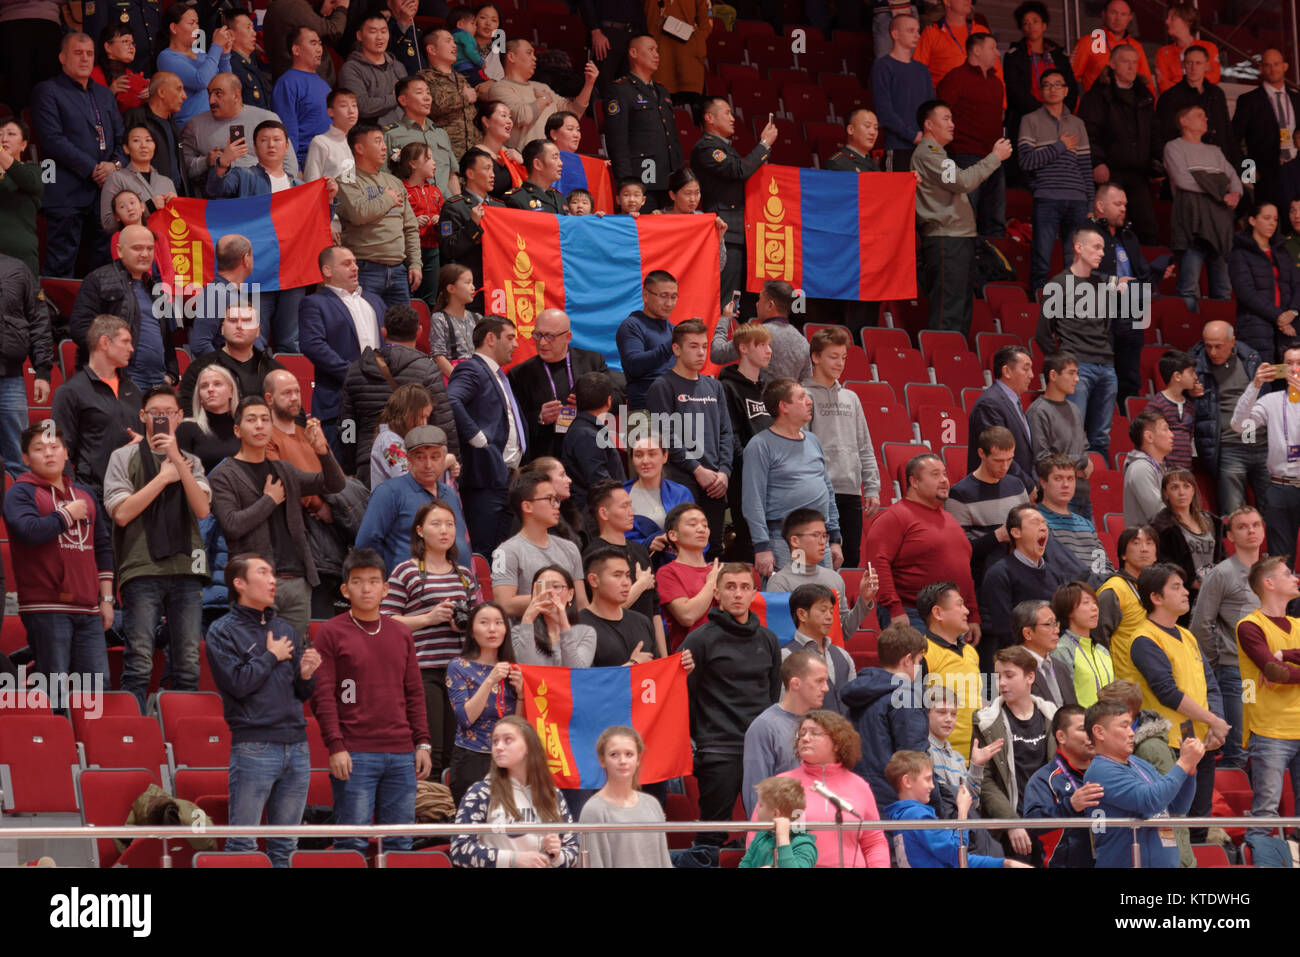 Saint-pétersbourg, Russie - le 16 décembre 2017 : des fans de Mongolie pour célébrer la médaille d'or de Dorjsuren, Mongolie Sumiya chez les femmes U57 au cours de Judo Monde Mas Banque D'Images